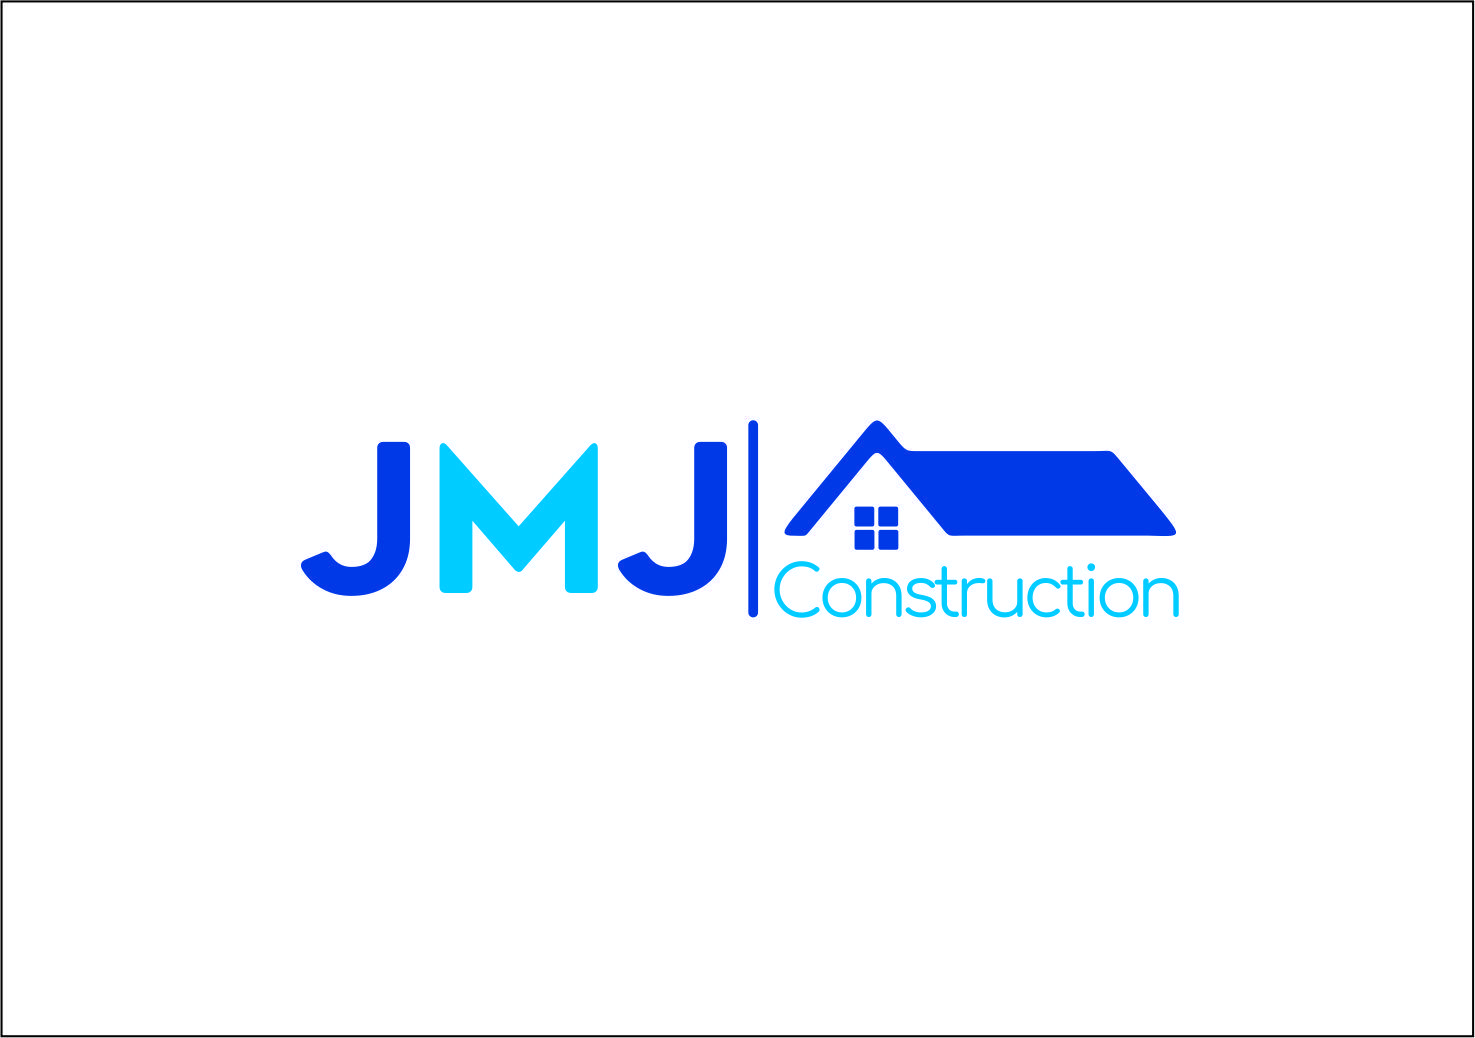 Contruction Logo - Bold, Serious, Construction Logo Design for JMJ Construction